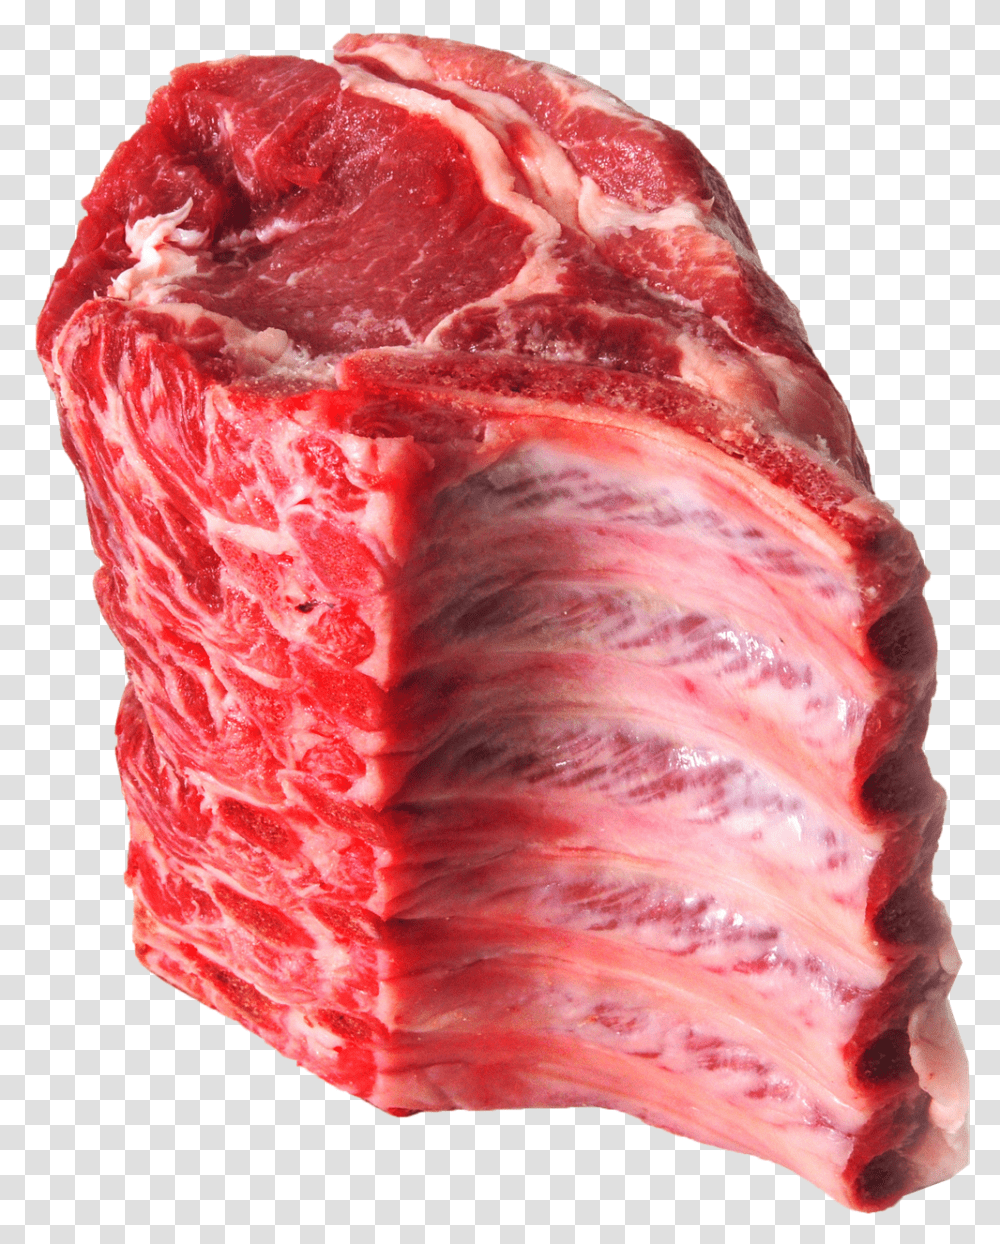 Pork Images Background Rib Kobe, Food, Steak, Butcher Shop, Ribs Transparent Png